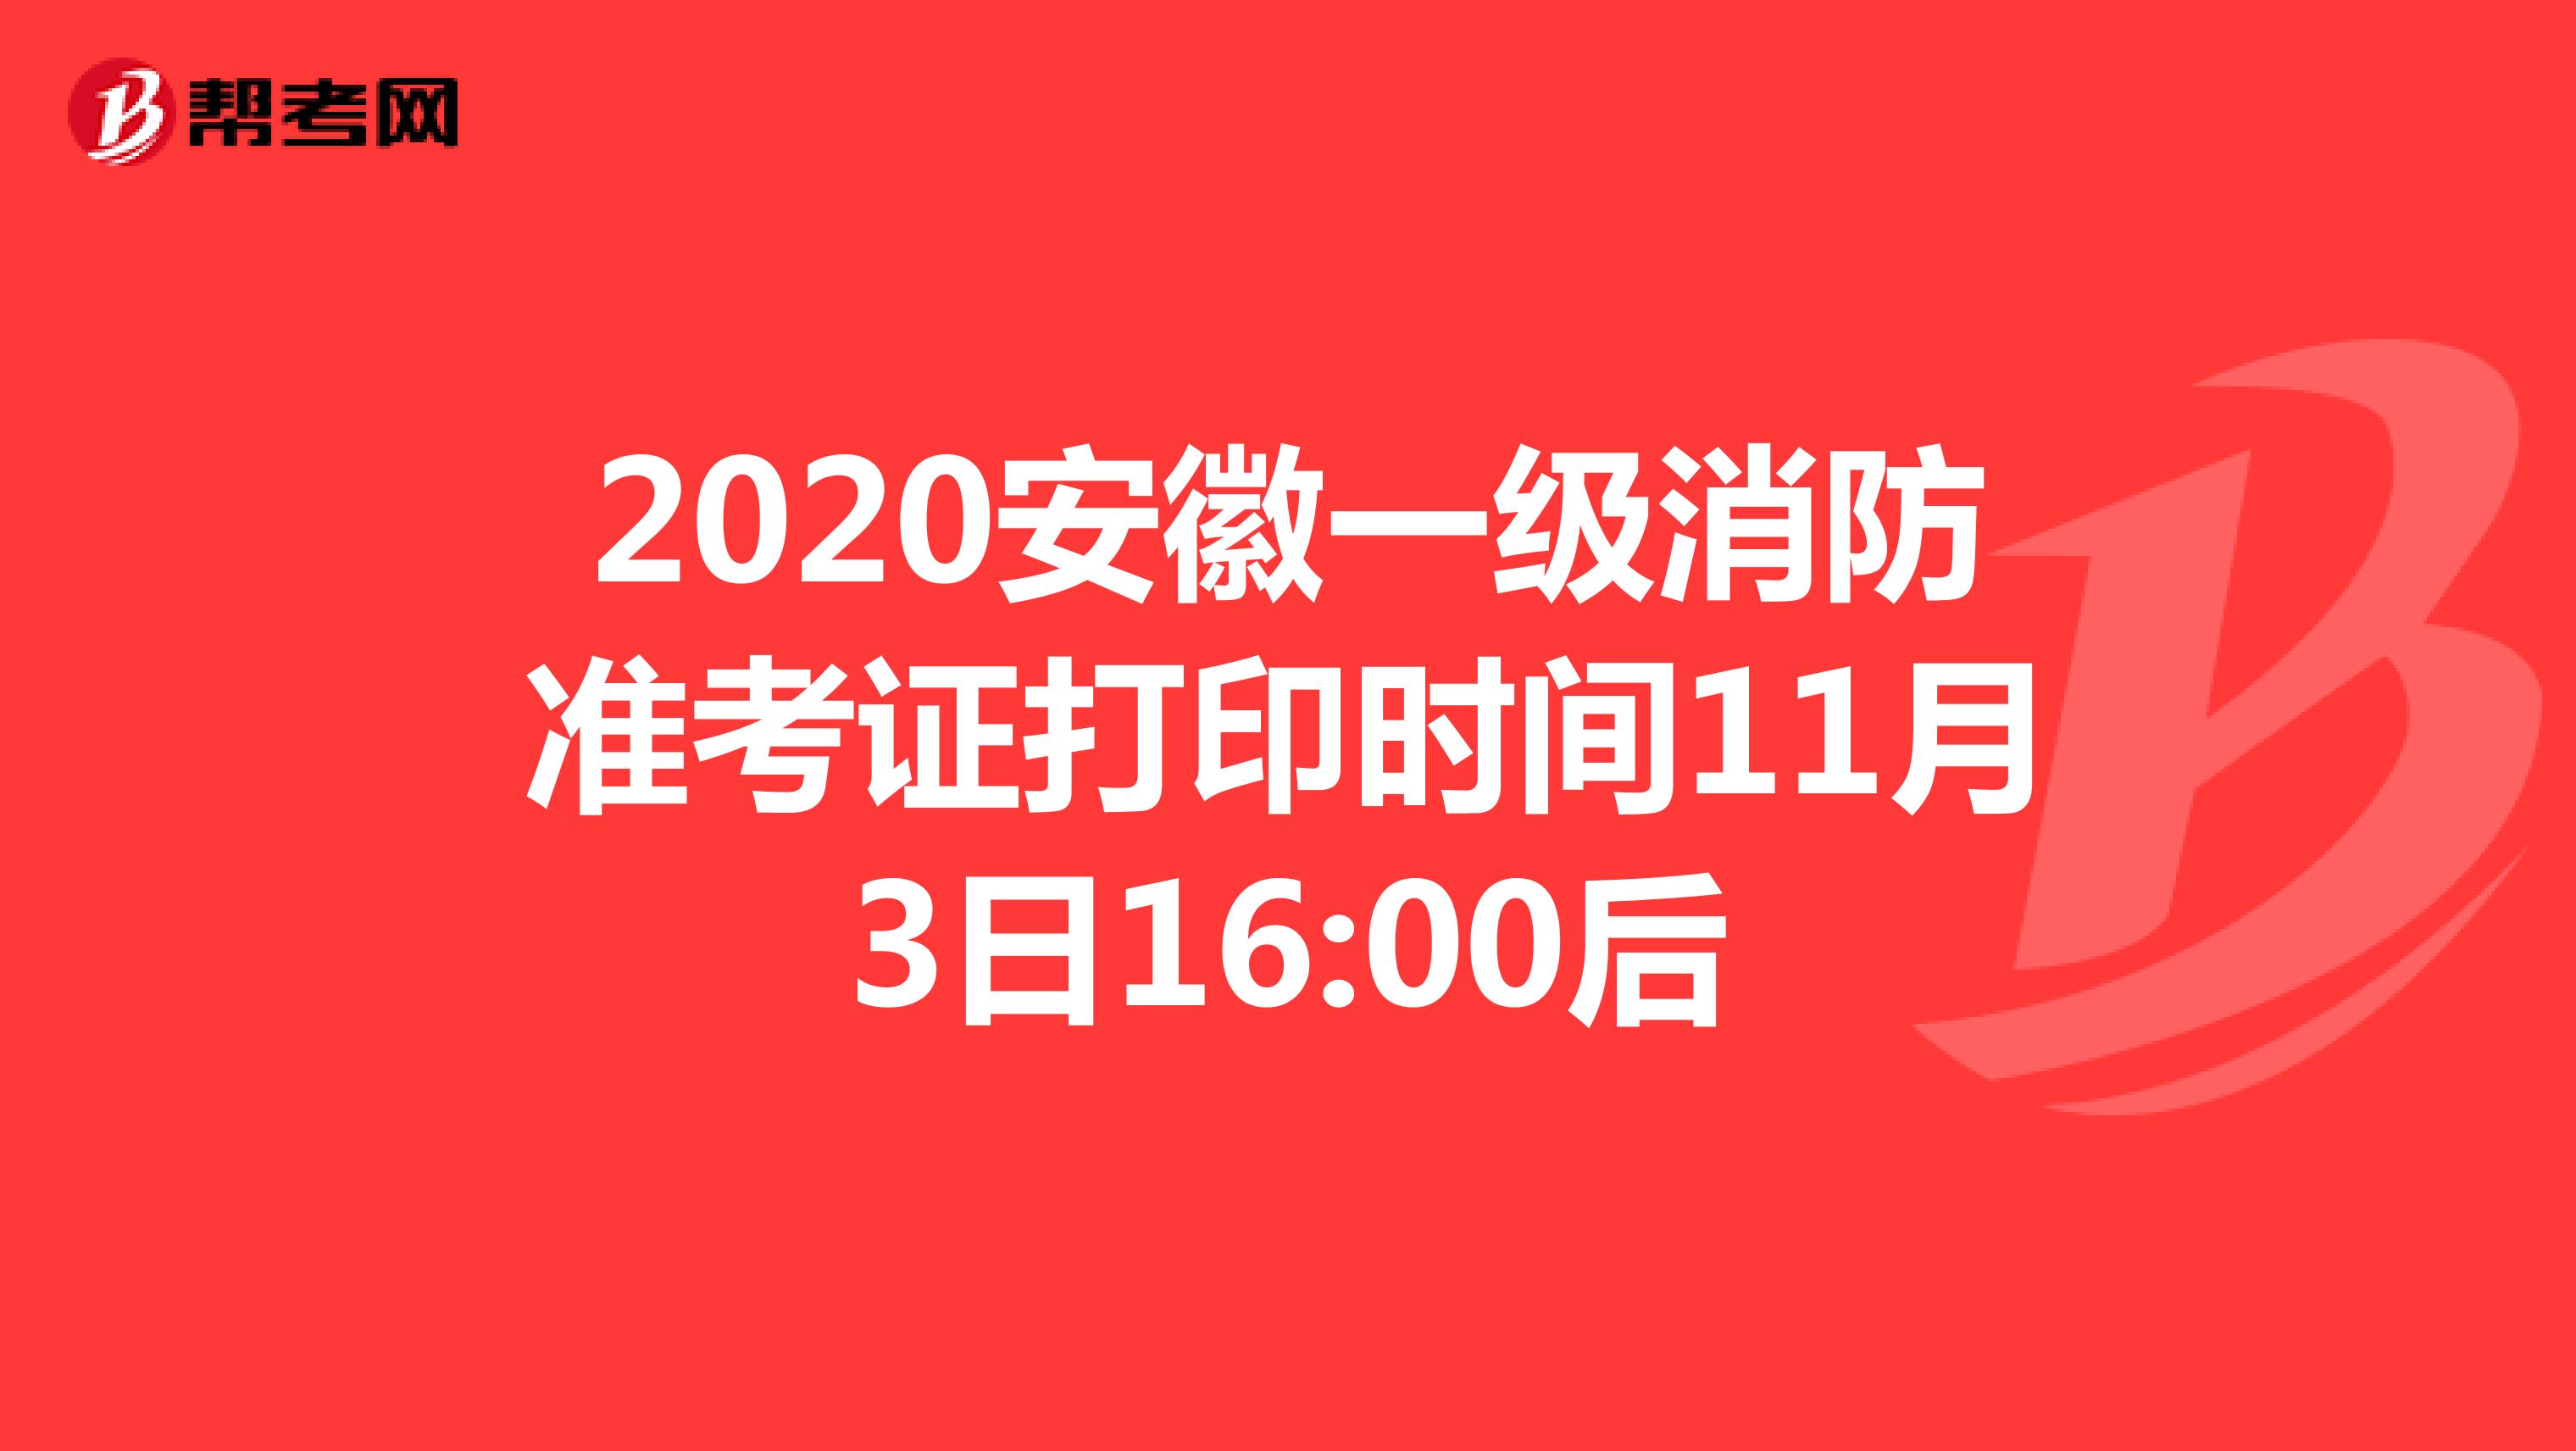 2020安徽一级消防准考证打印时间11月3日16:00后